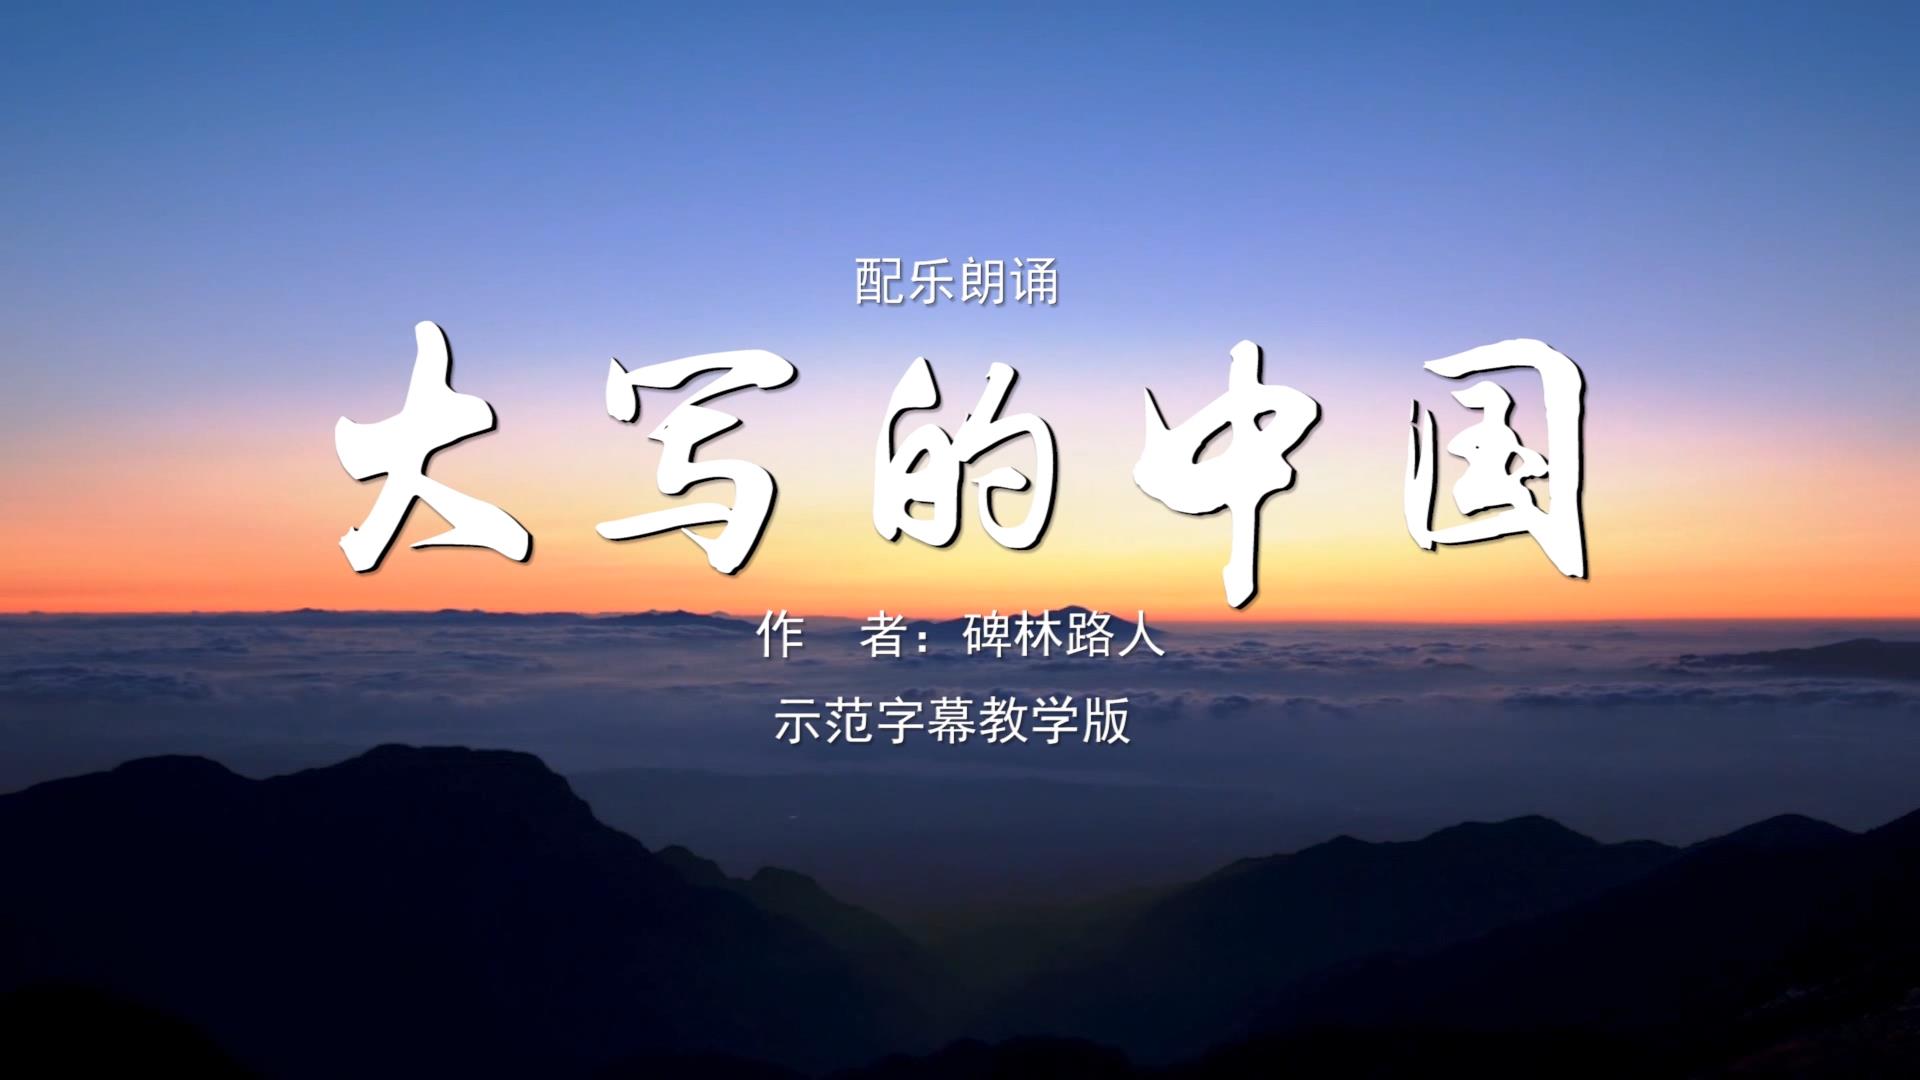 大写的中国 诗歌朗诵配乐伴奏舞台演出LED背景大屏幕视频素材TV